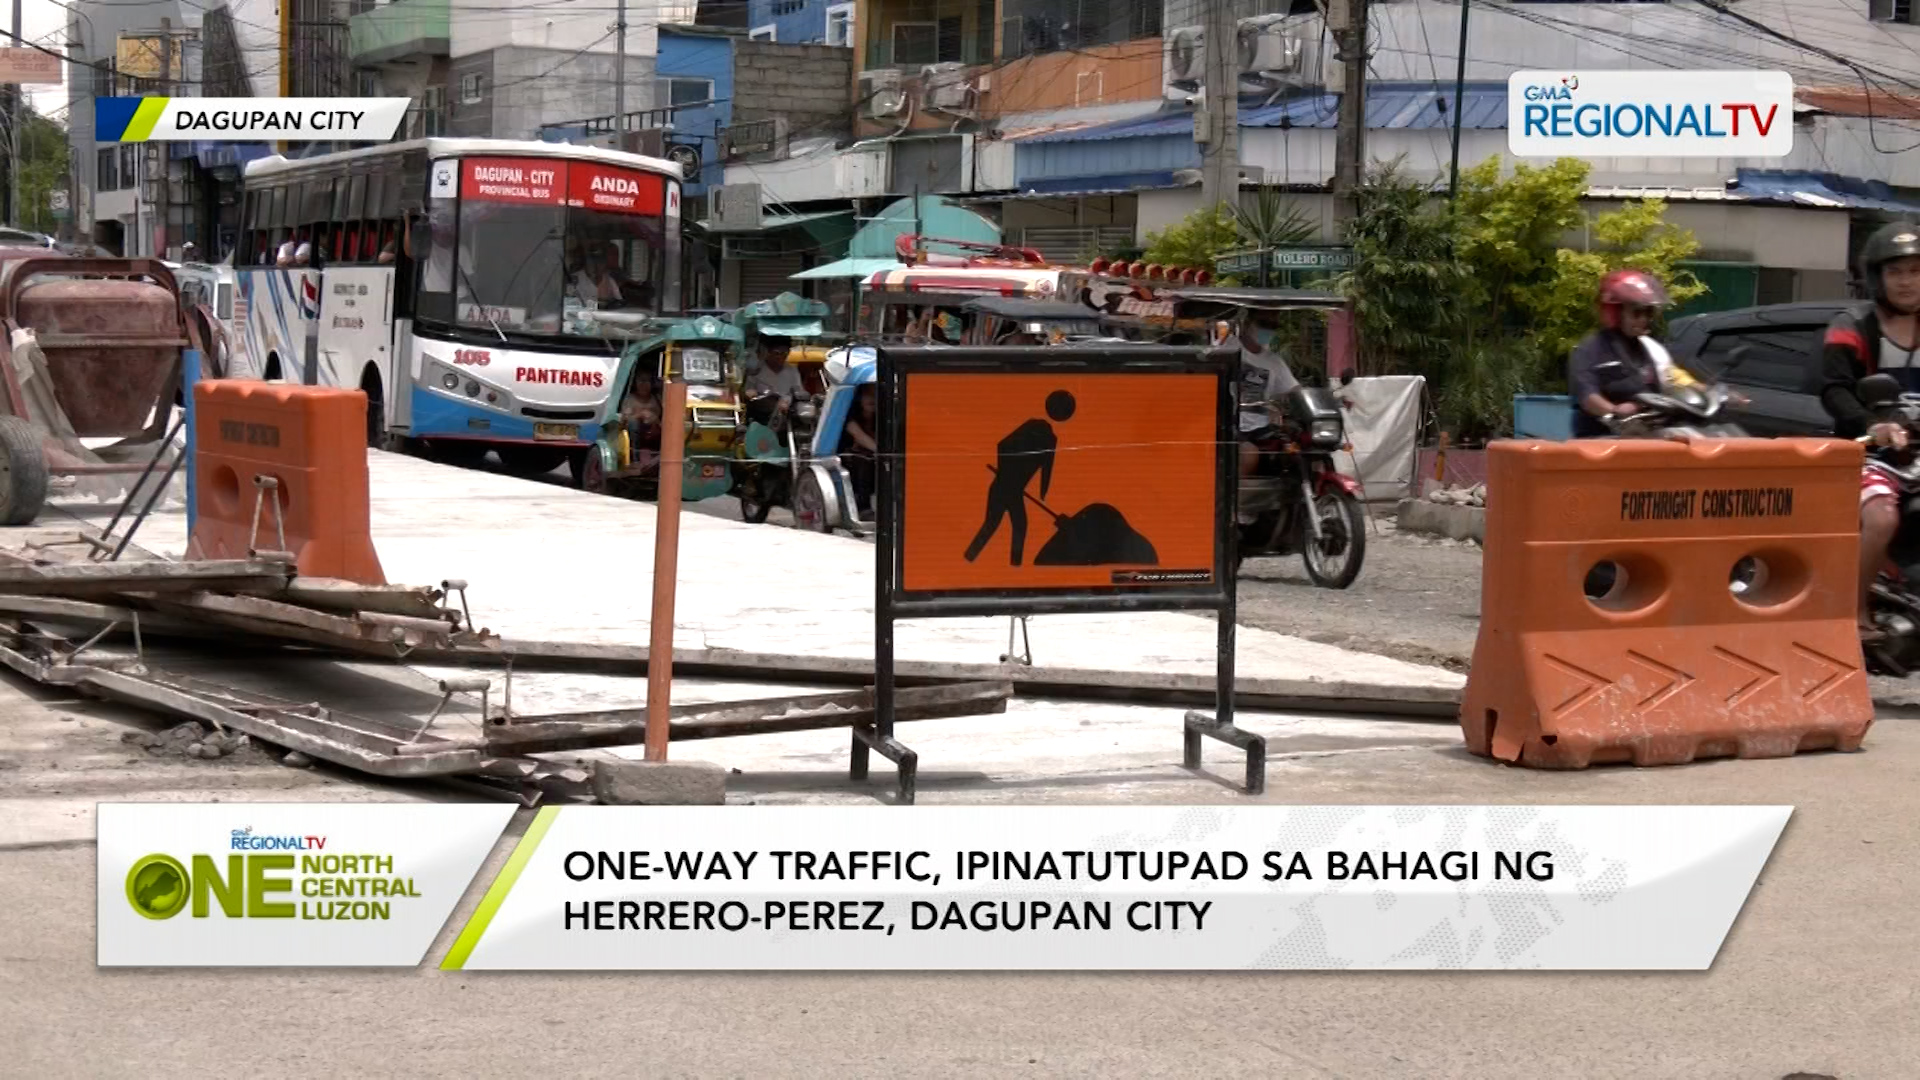 One-way traffic, ipinatutupad sa bahagi ng Herrero-Perez, Dagupan City